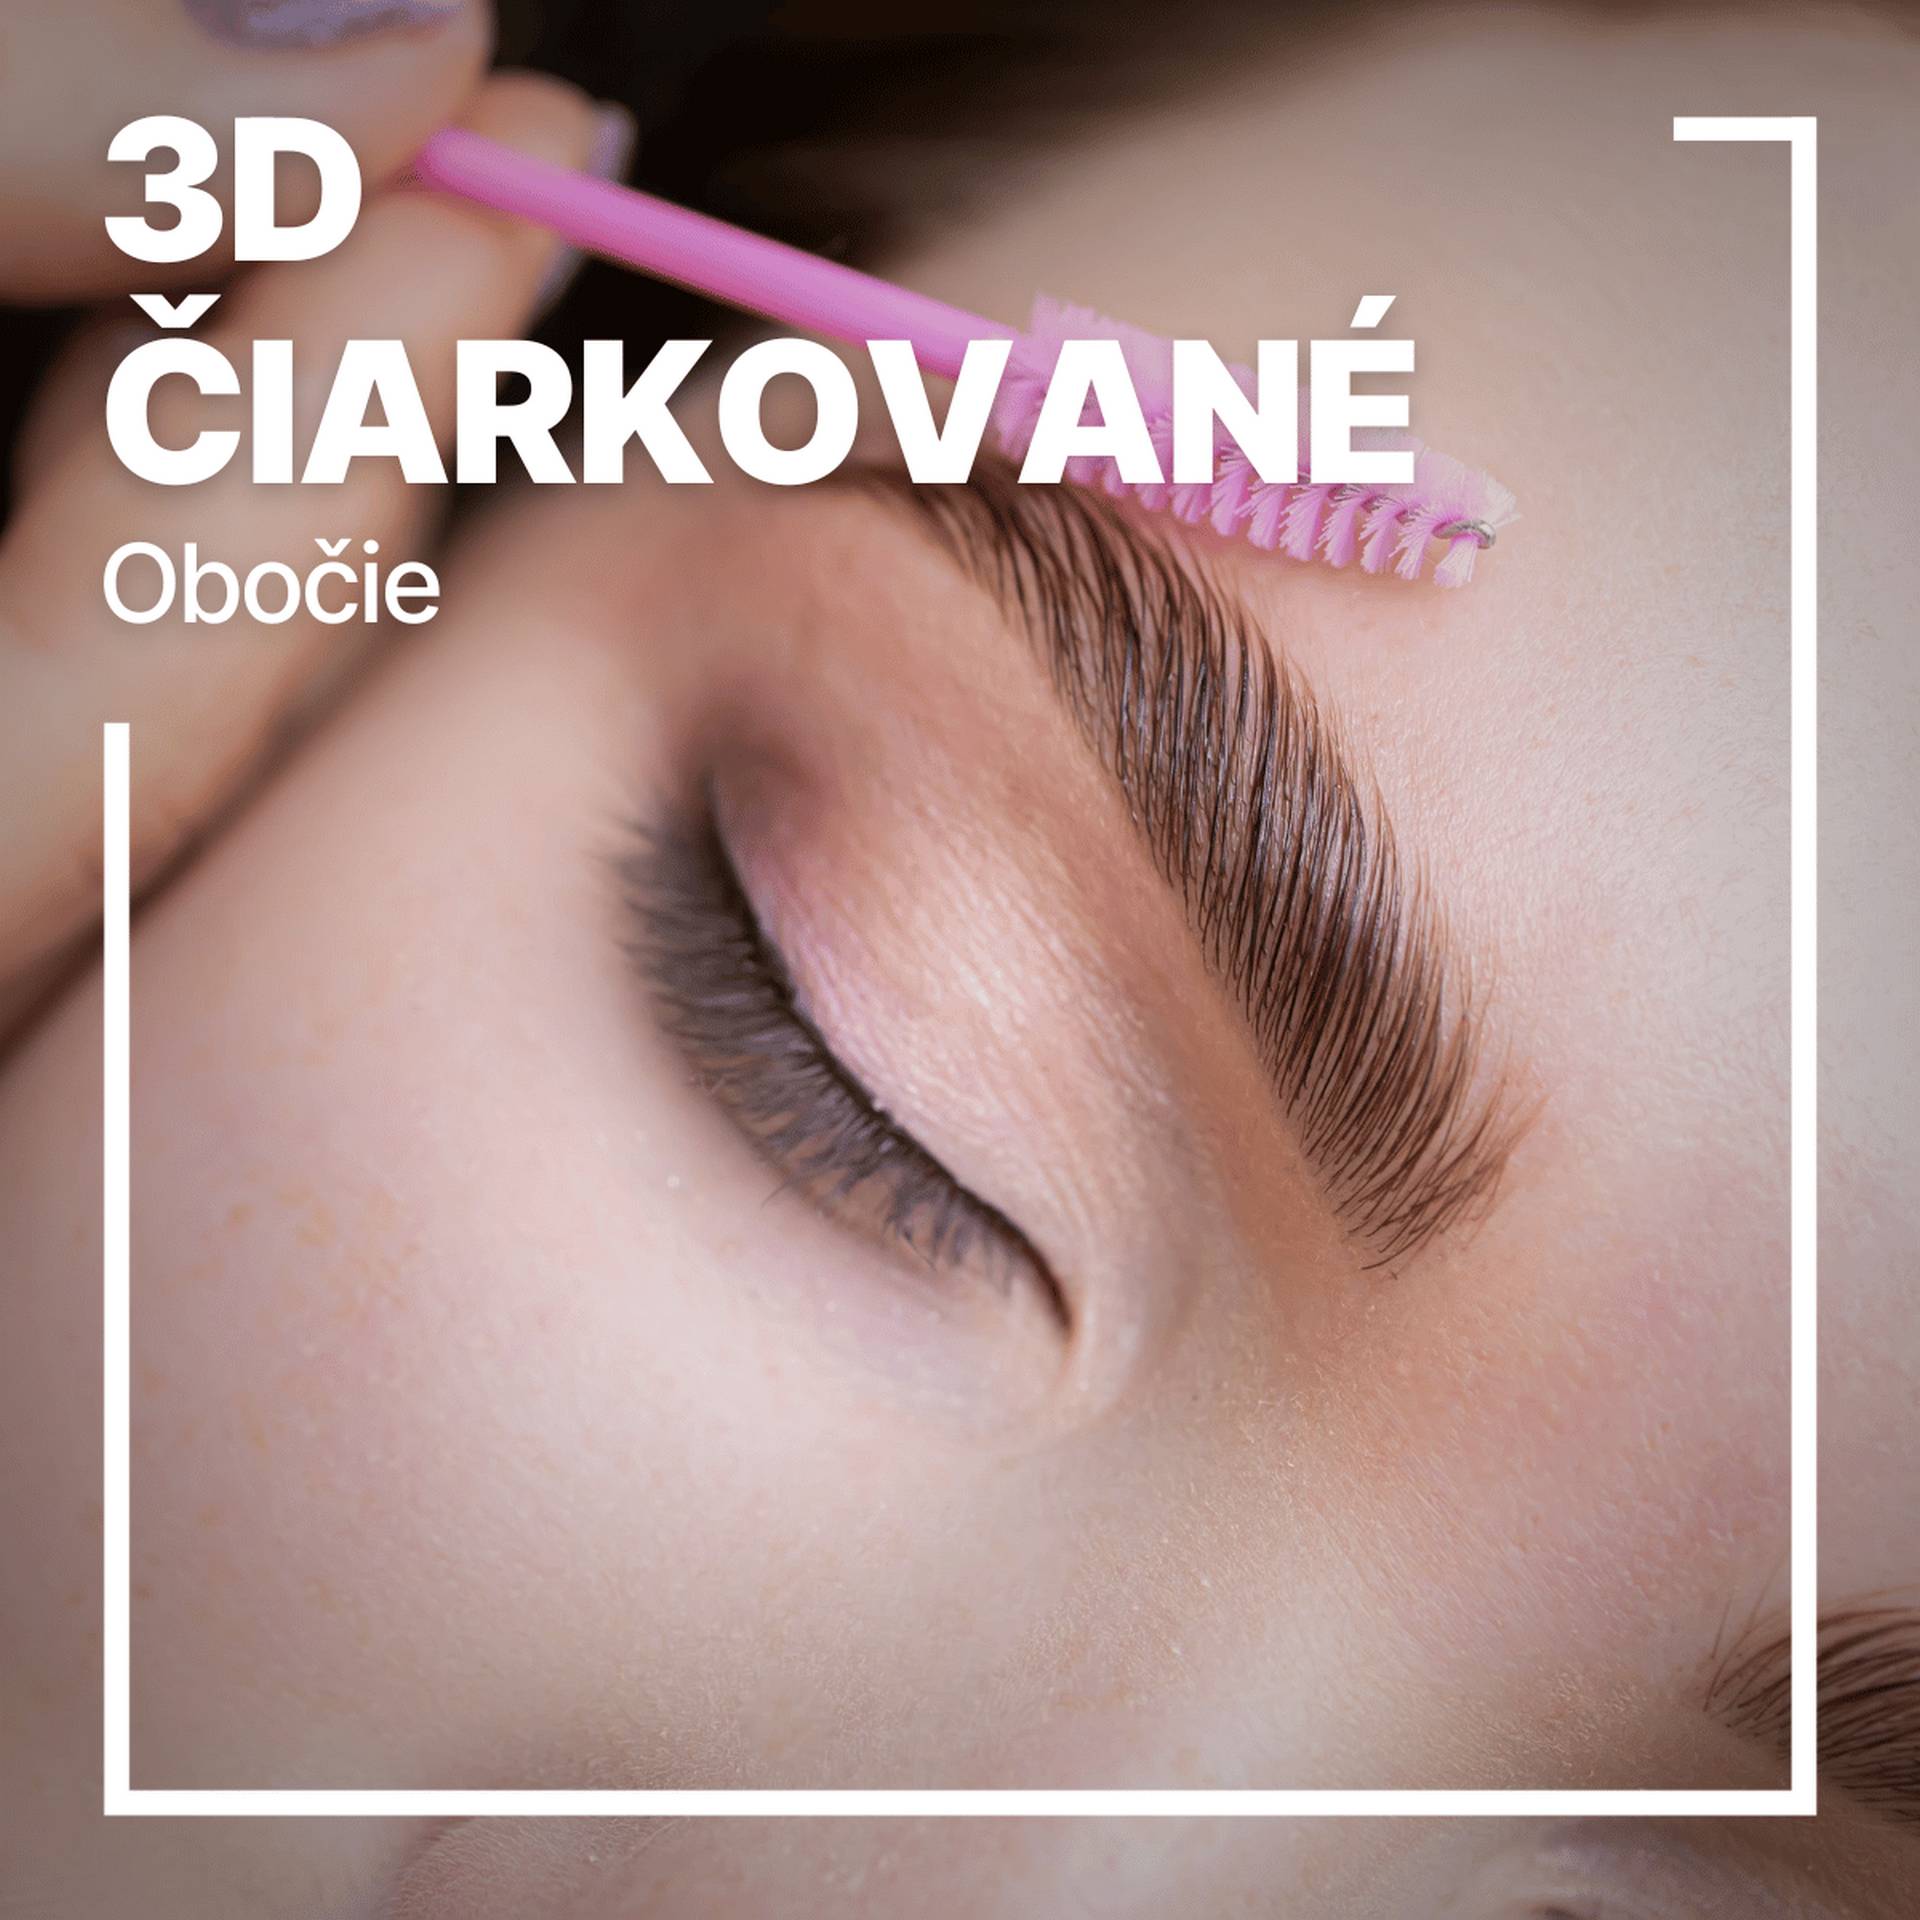 Permanentny make-up 3D ciarkovane obocie + Permanentny make-up Pudrovanie shading - Global Education Centre